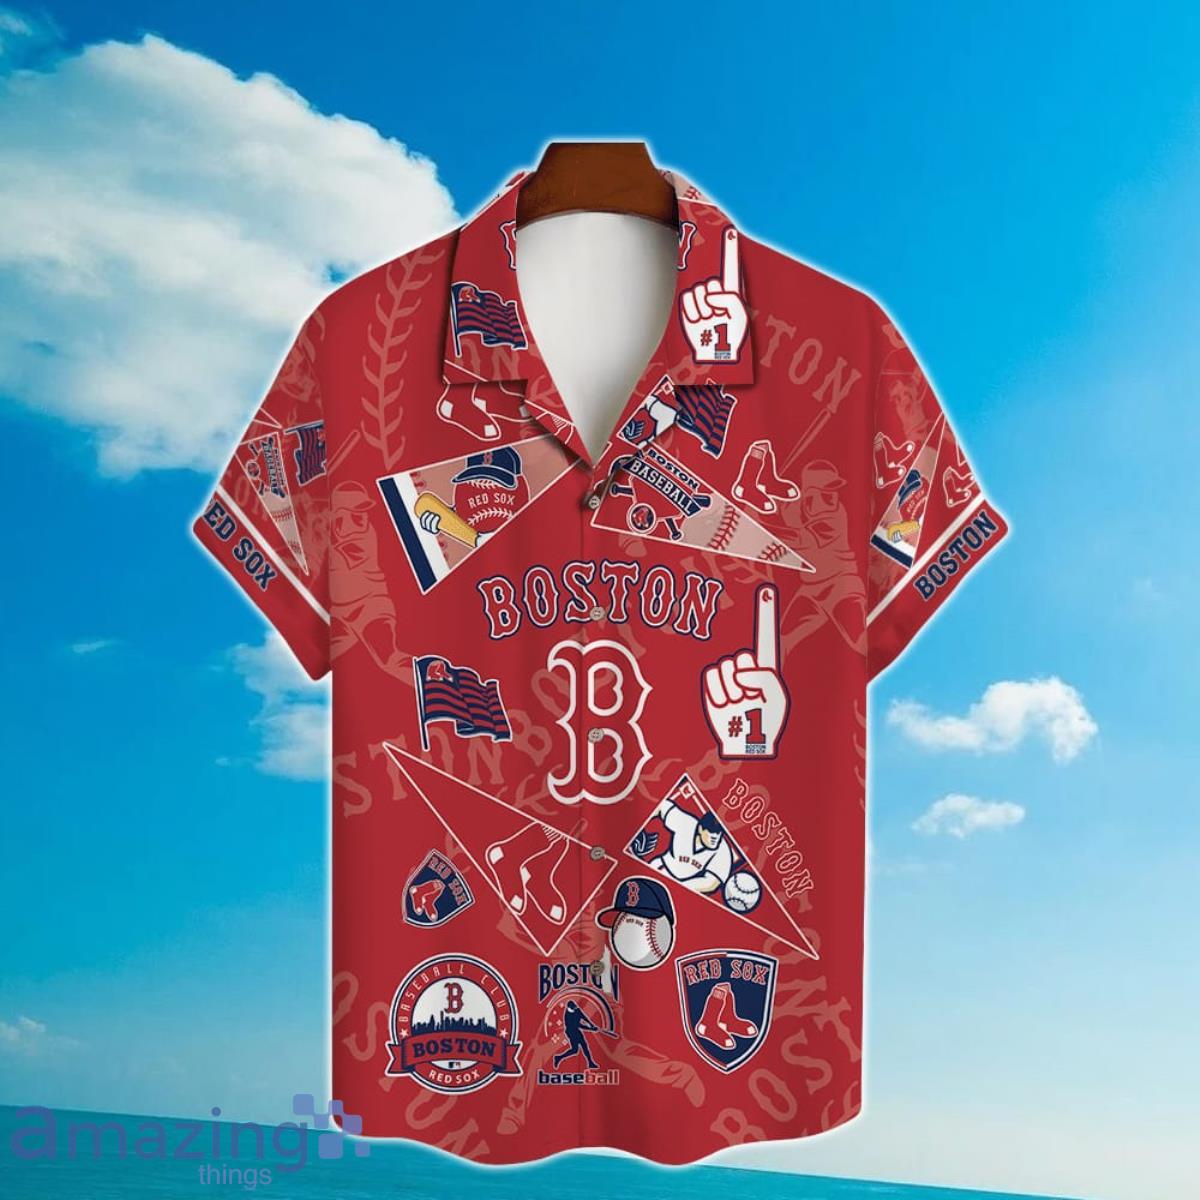 Tampa Bay Bay Of Champions Shirt - Shibtee Clothing